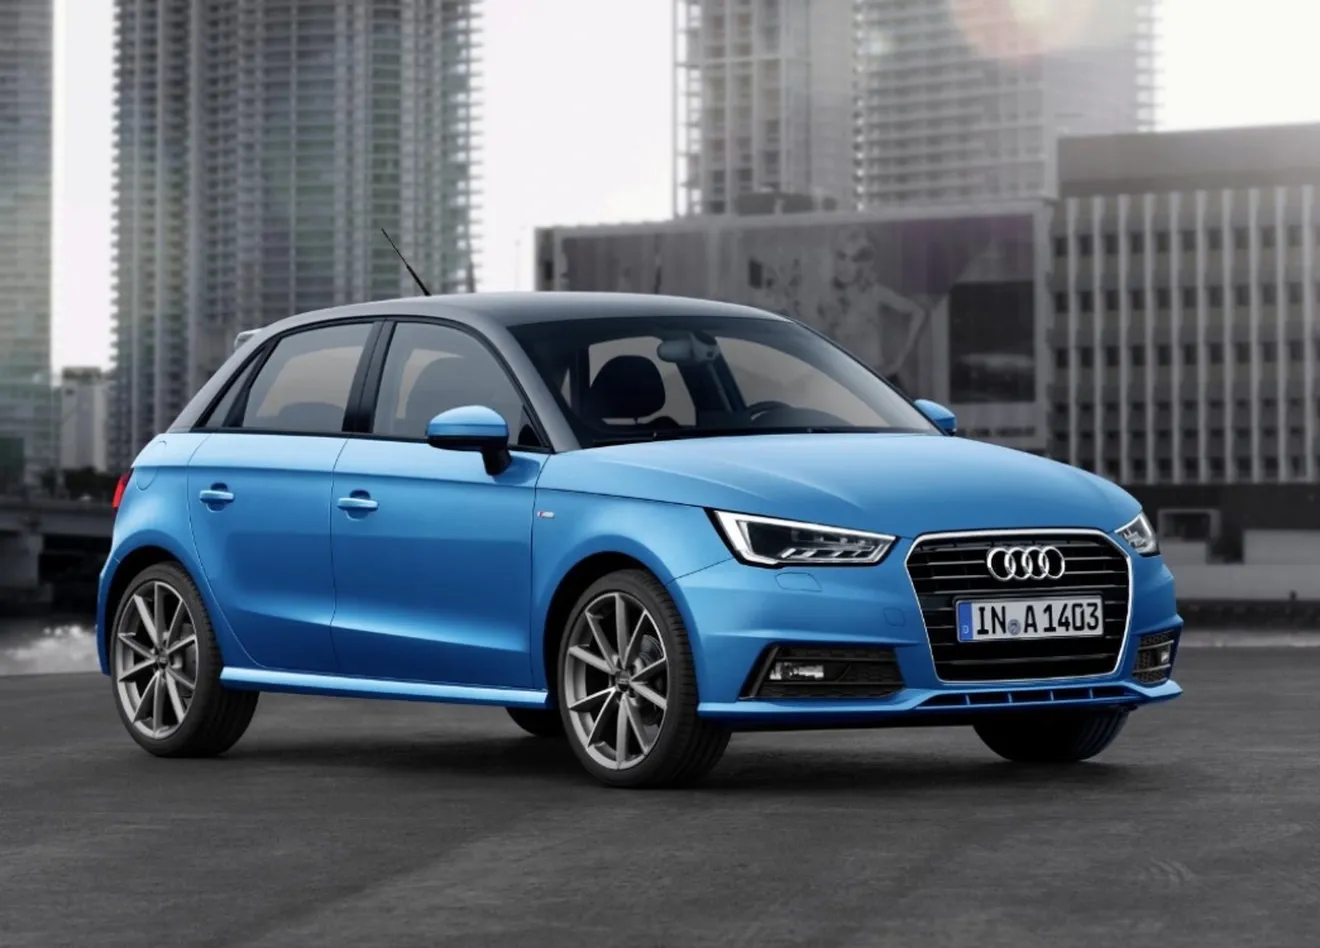 Audi A1 2015, pequeños cambios en diseño y nuevos motores de tres cilindros